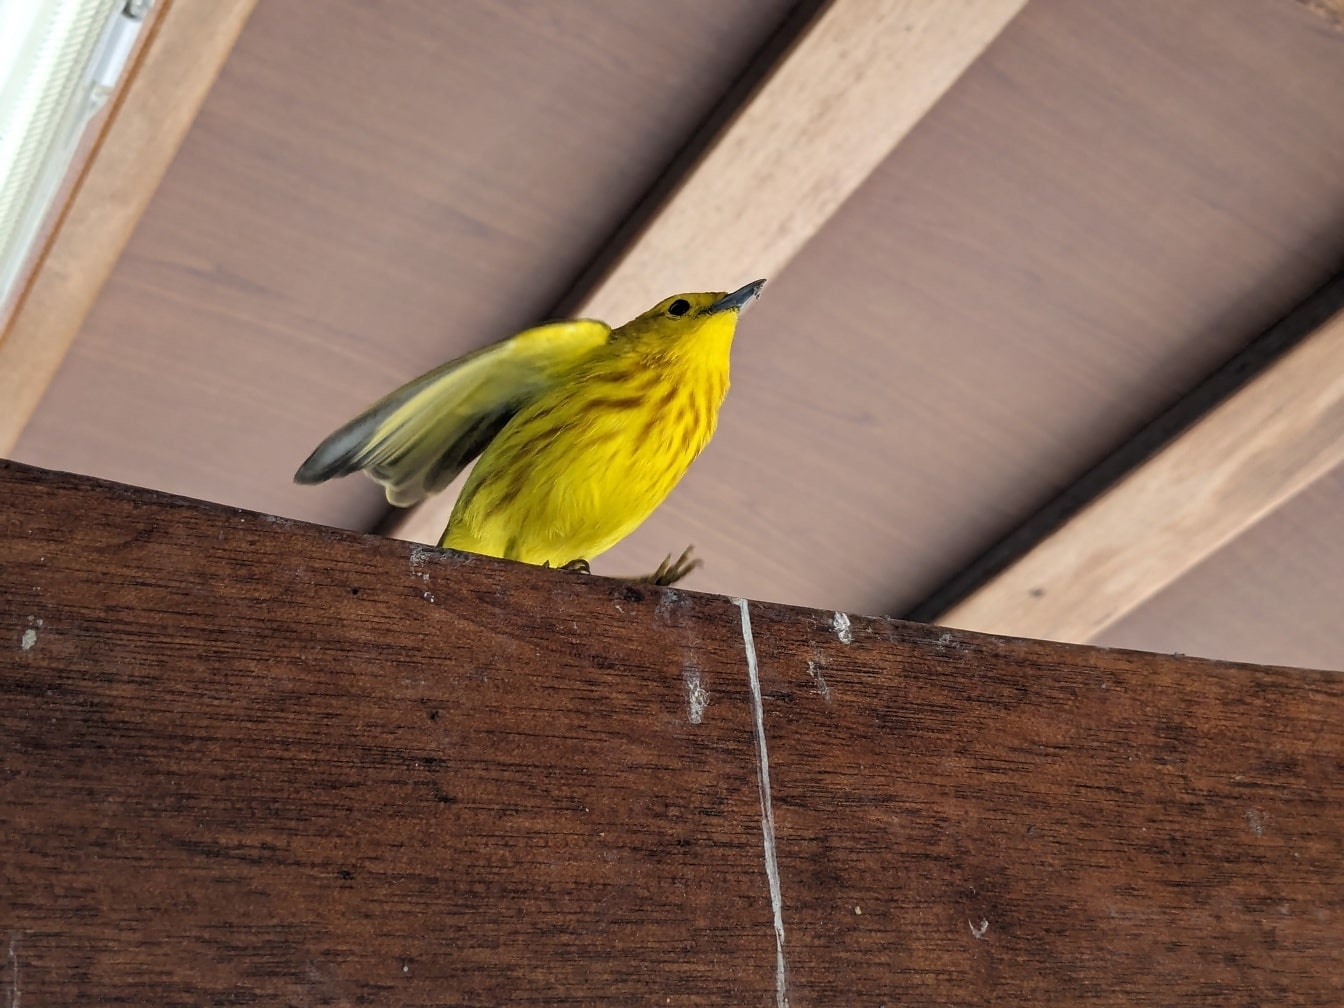 Chích vàng (Setophaga petechia) một con chim trên xà gỗ